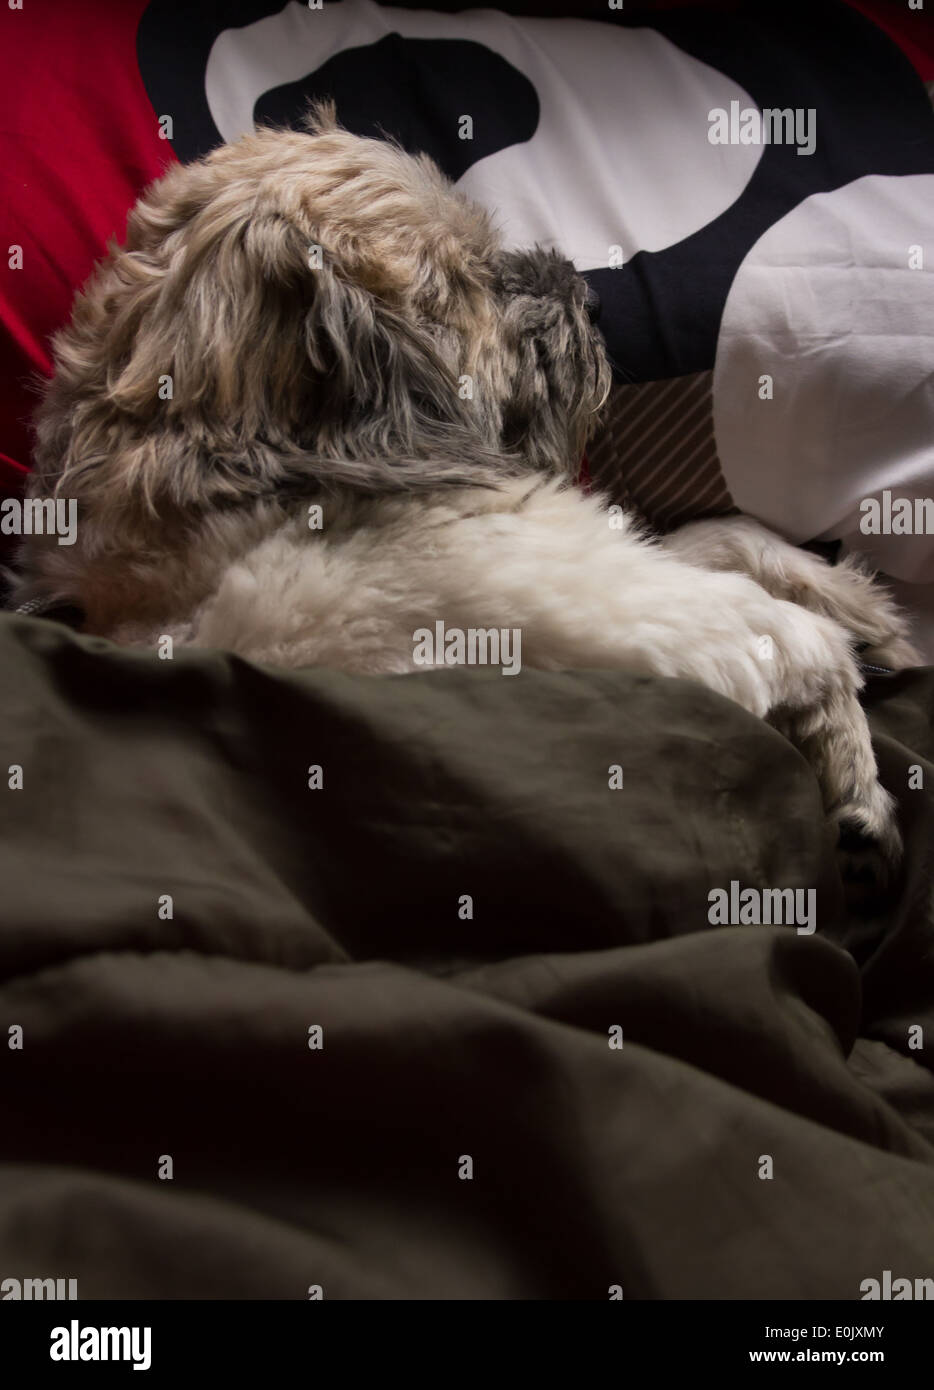 sleep dog with blanket Stock Photo